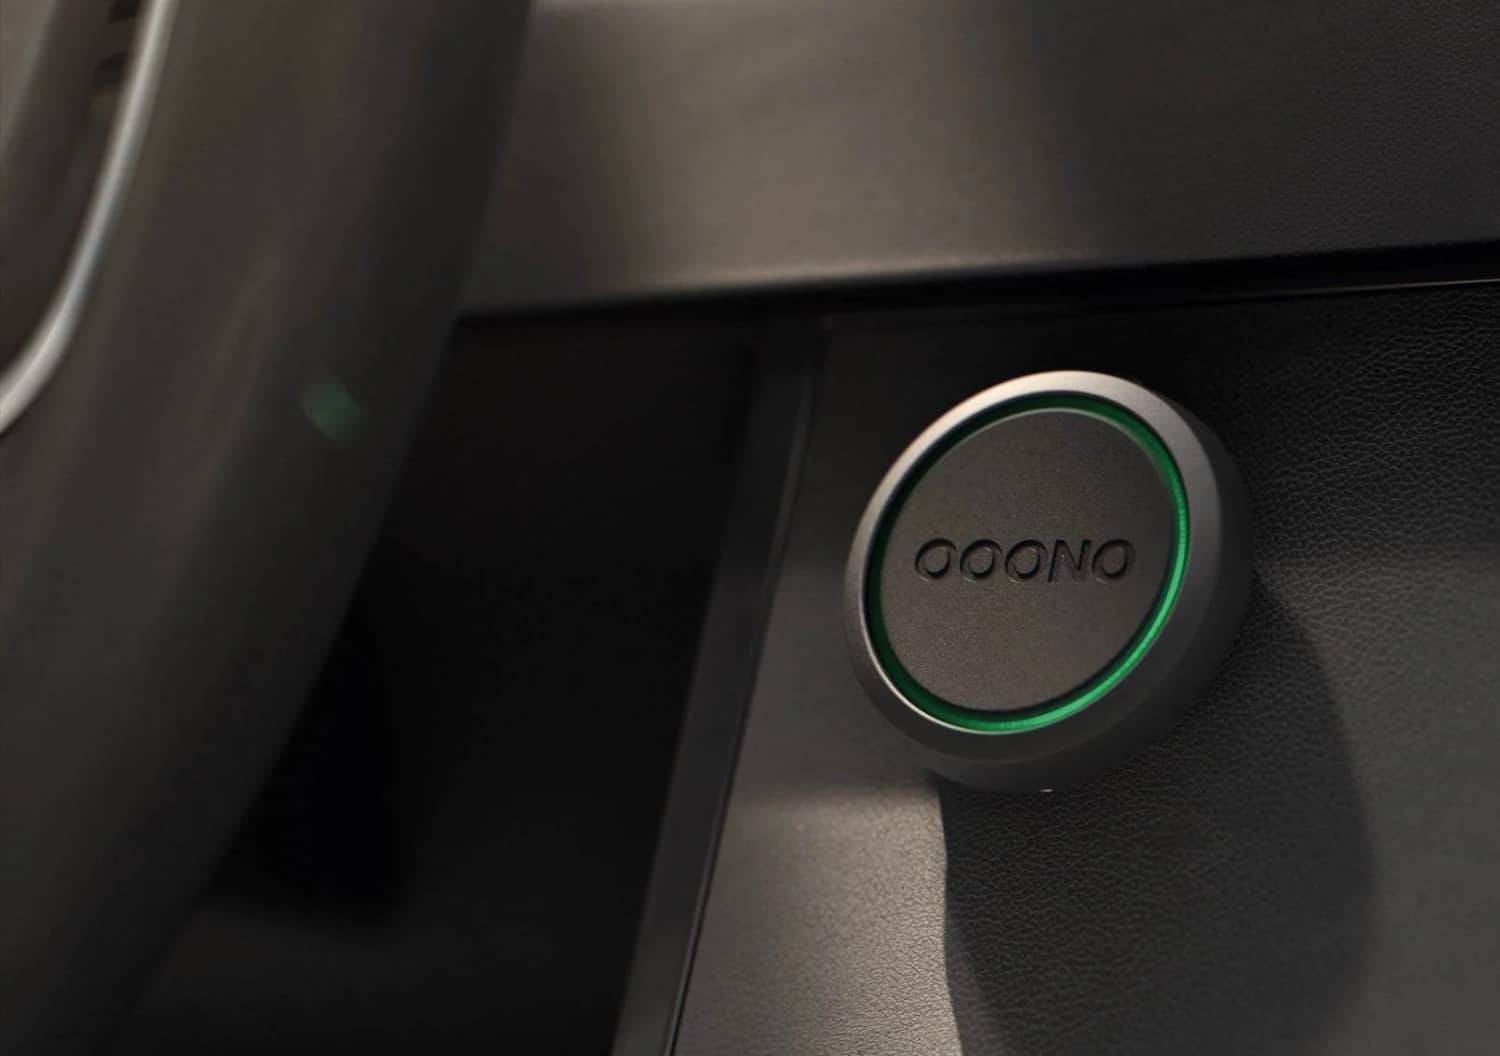 Ooono 2: Neuer Radarwarner mit CarPlay-Abo jetzt in Deutschland verfügbar